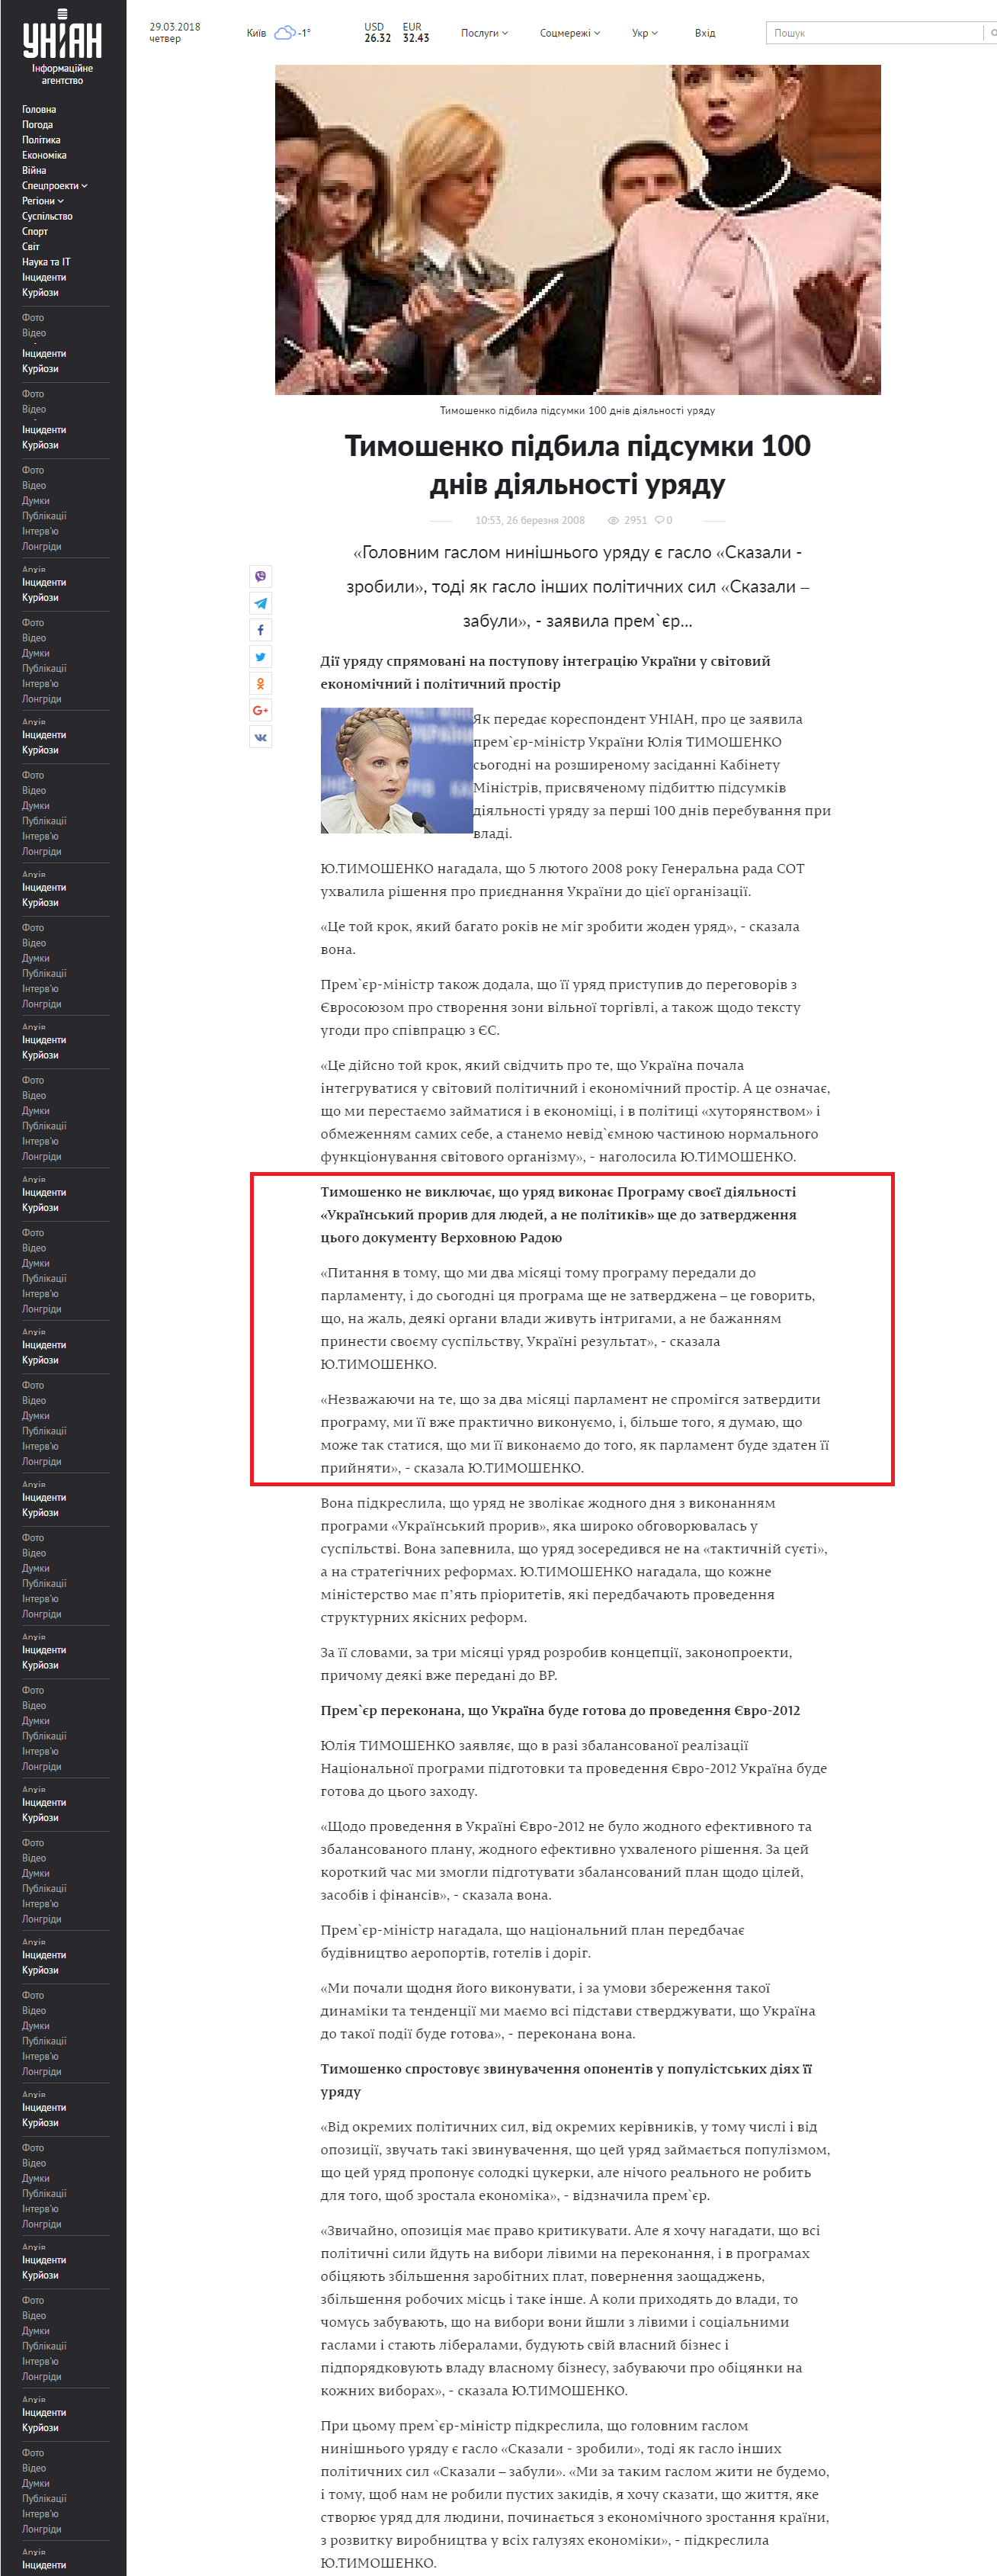 https://www.unian.ua/politics/105467-timoshenko-pidbila-pidsumki-100-dniv-diyalnosti-uryadu.html